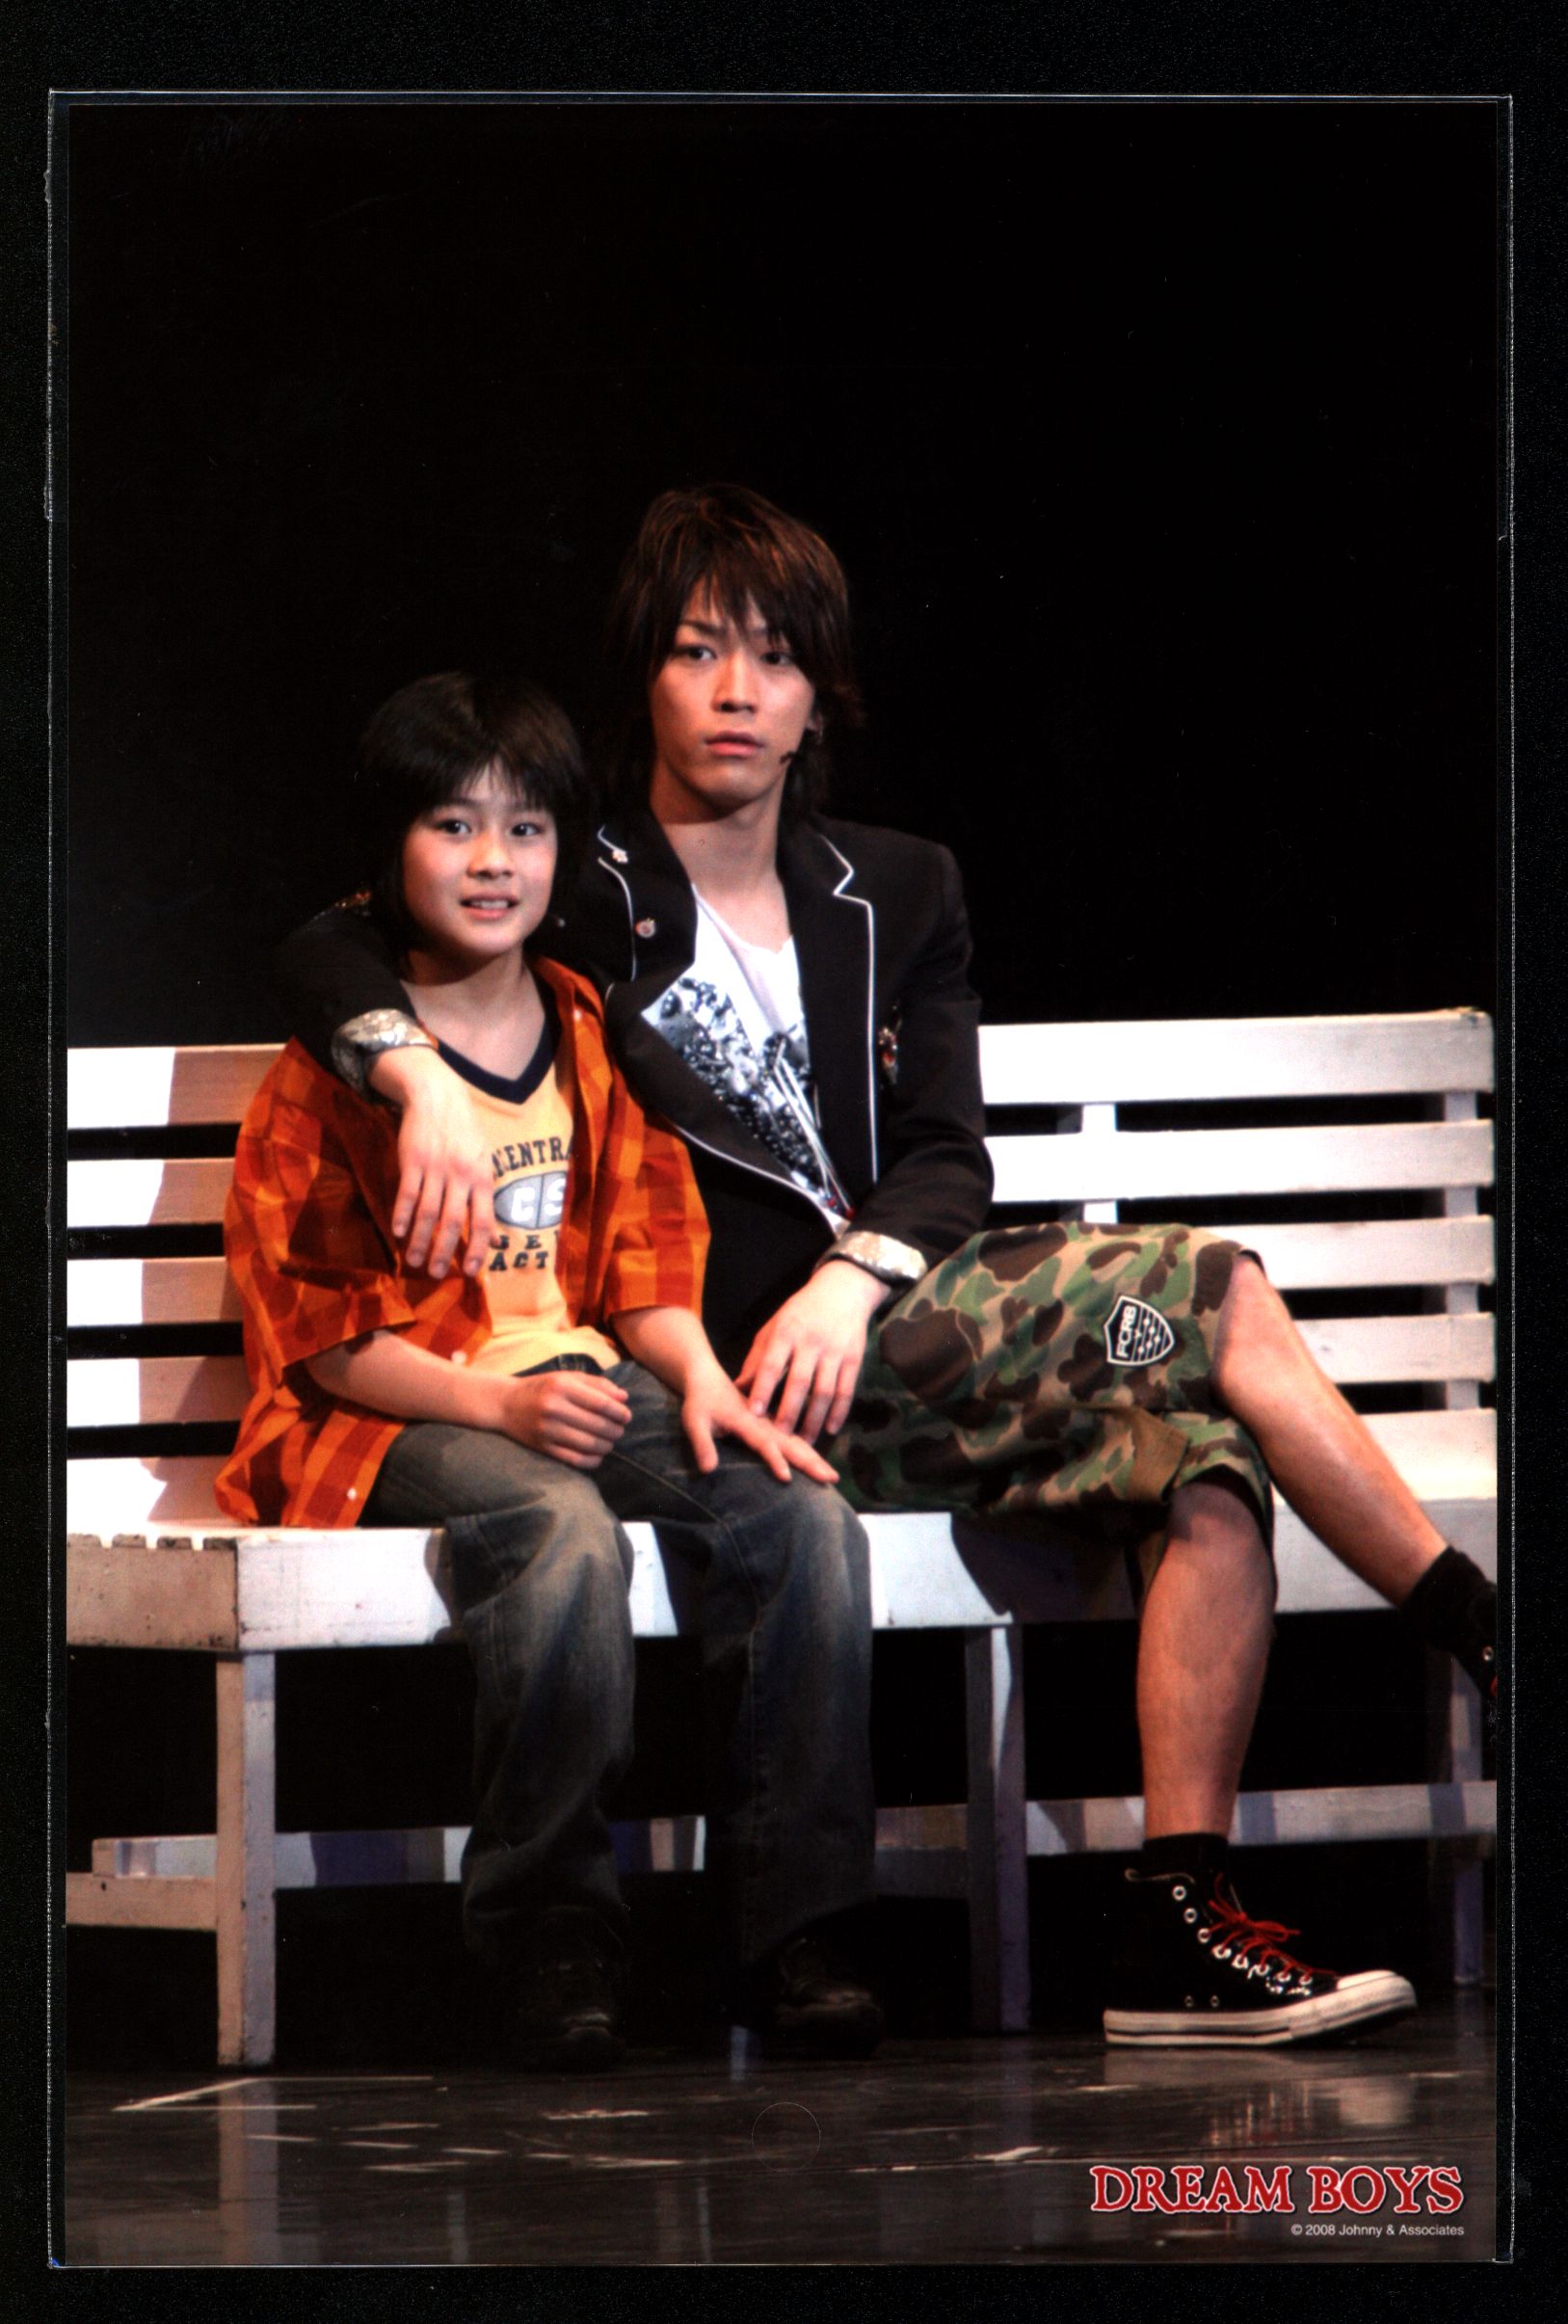 KAT-TUN / SixTONES 08 years DREAM BOYS Kazuya Kamenashi & Shintaro